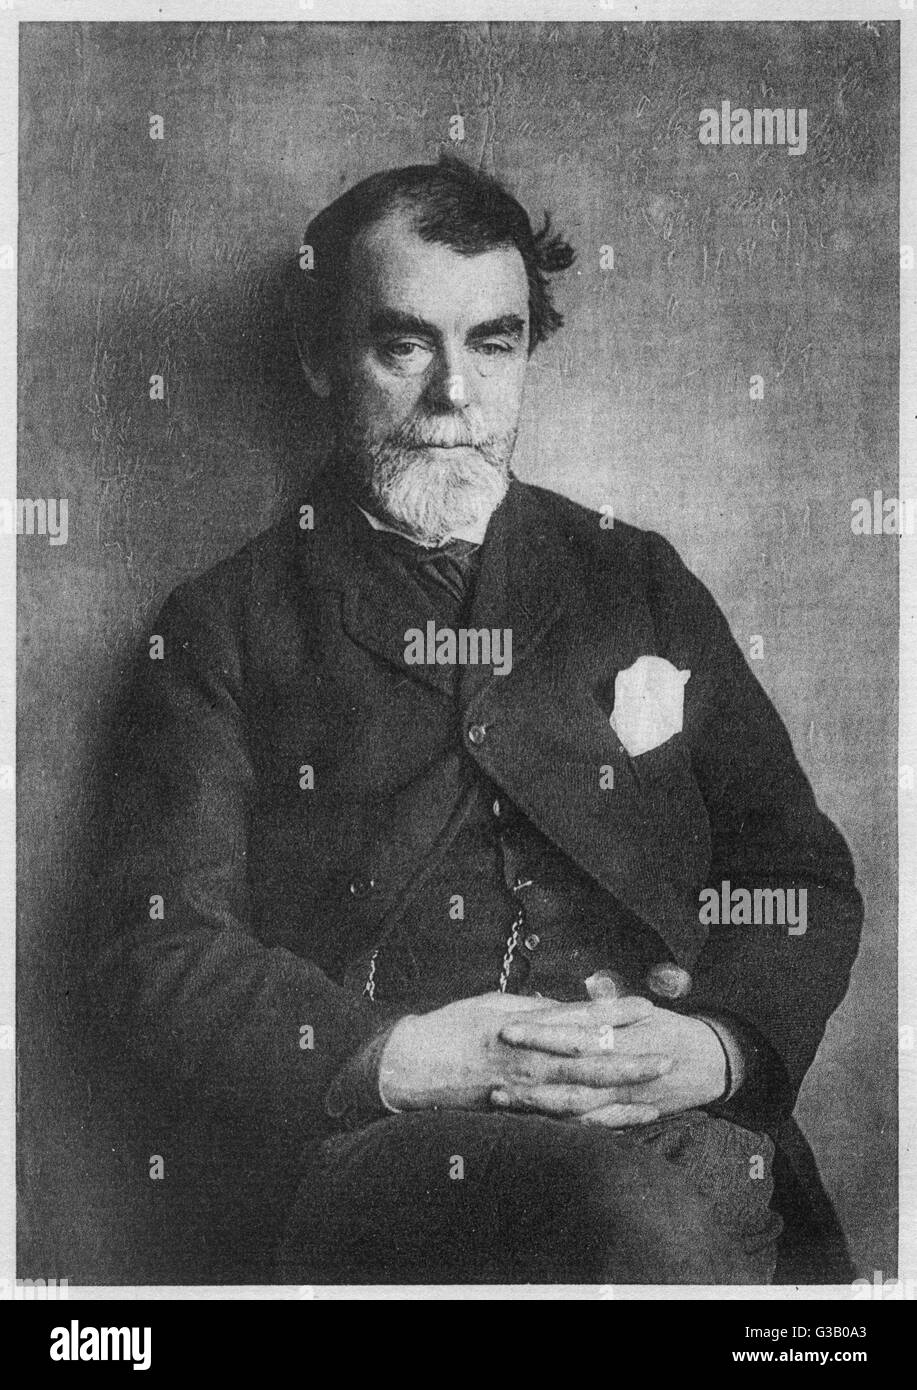 SAMUEL BUTLER-Autor von "Erewhon" und "der Weg von allem Fleisch" Foto März 1888 Datum: 1835-1902 Stockfoto